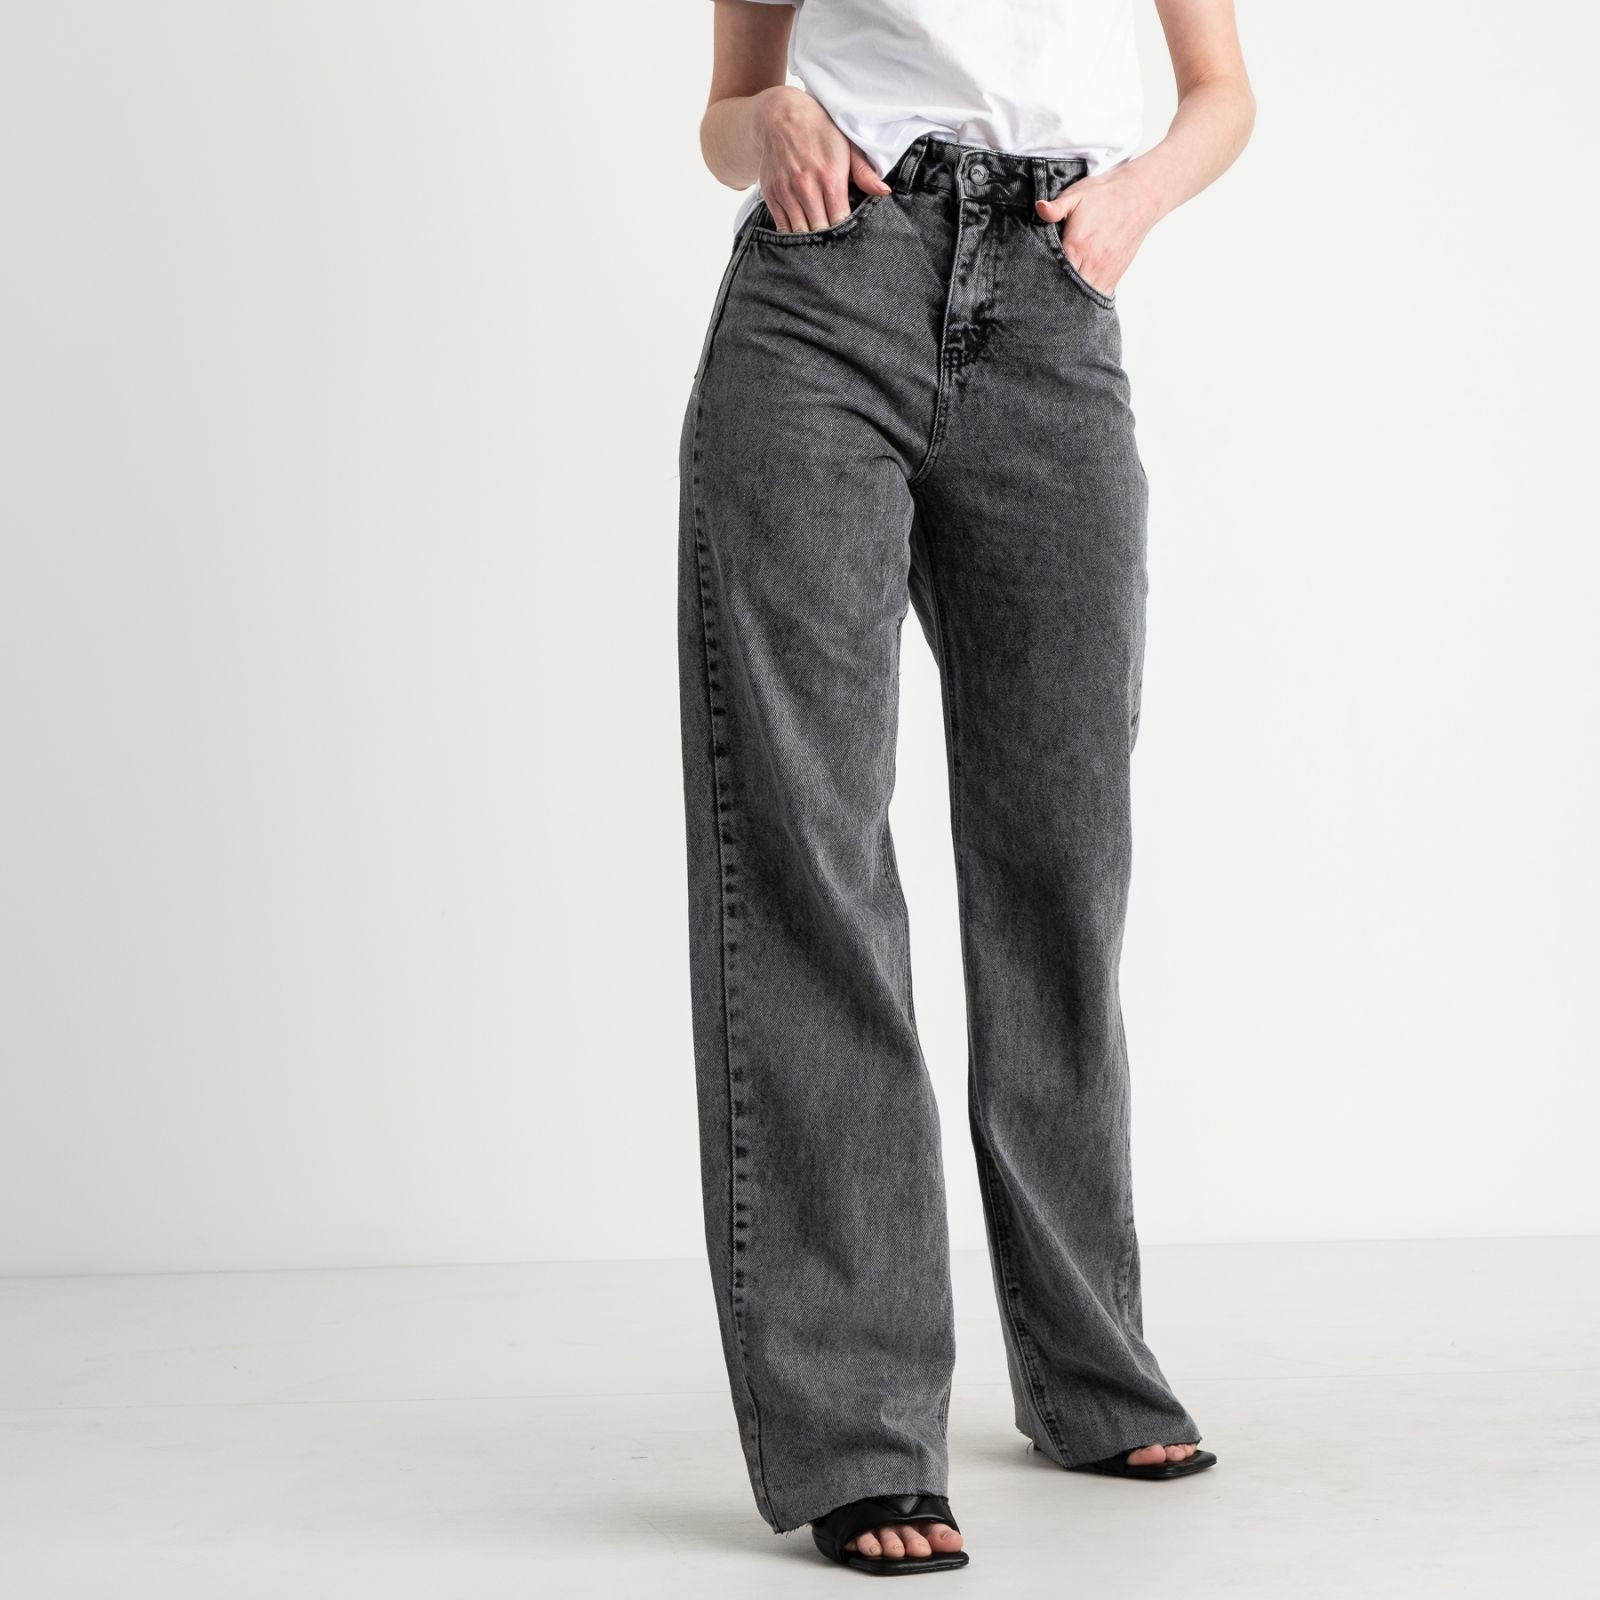 21452 YMR джинсы серые женские котоновые (7 ед. размеры:34.36.38/2.40/2.42)